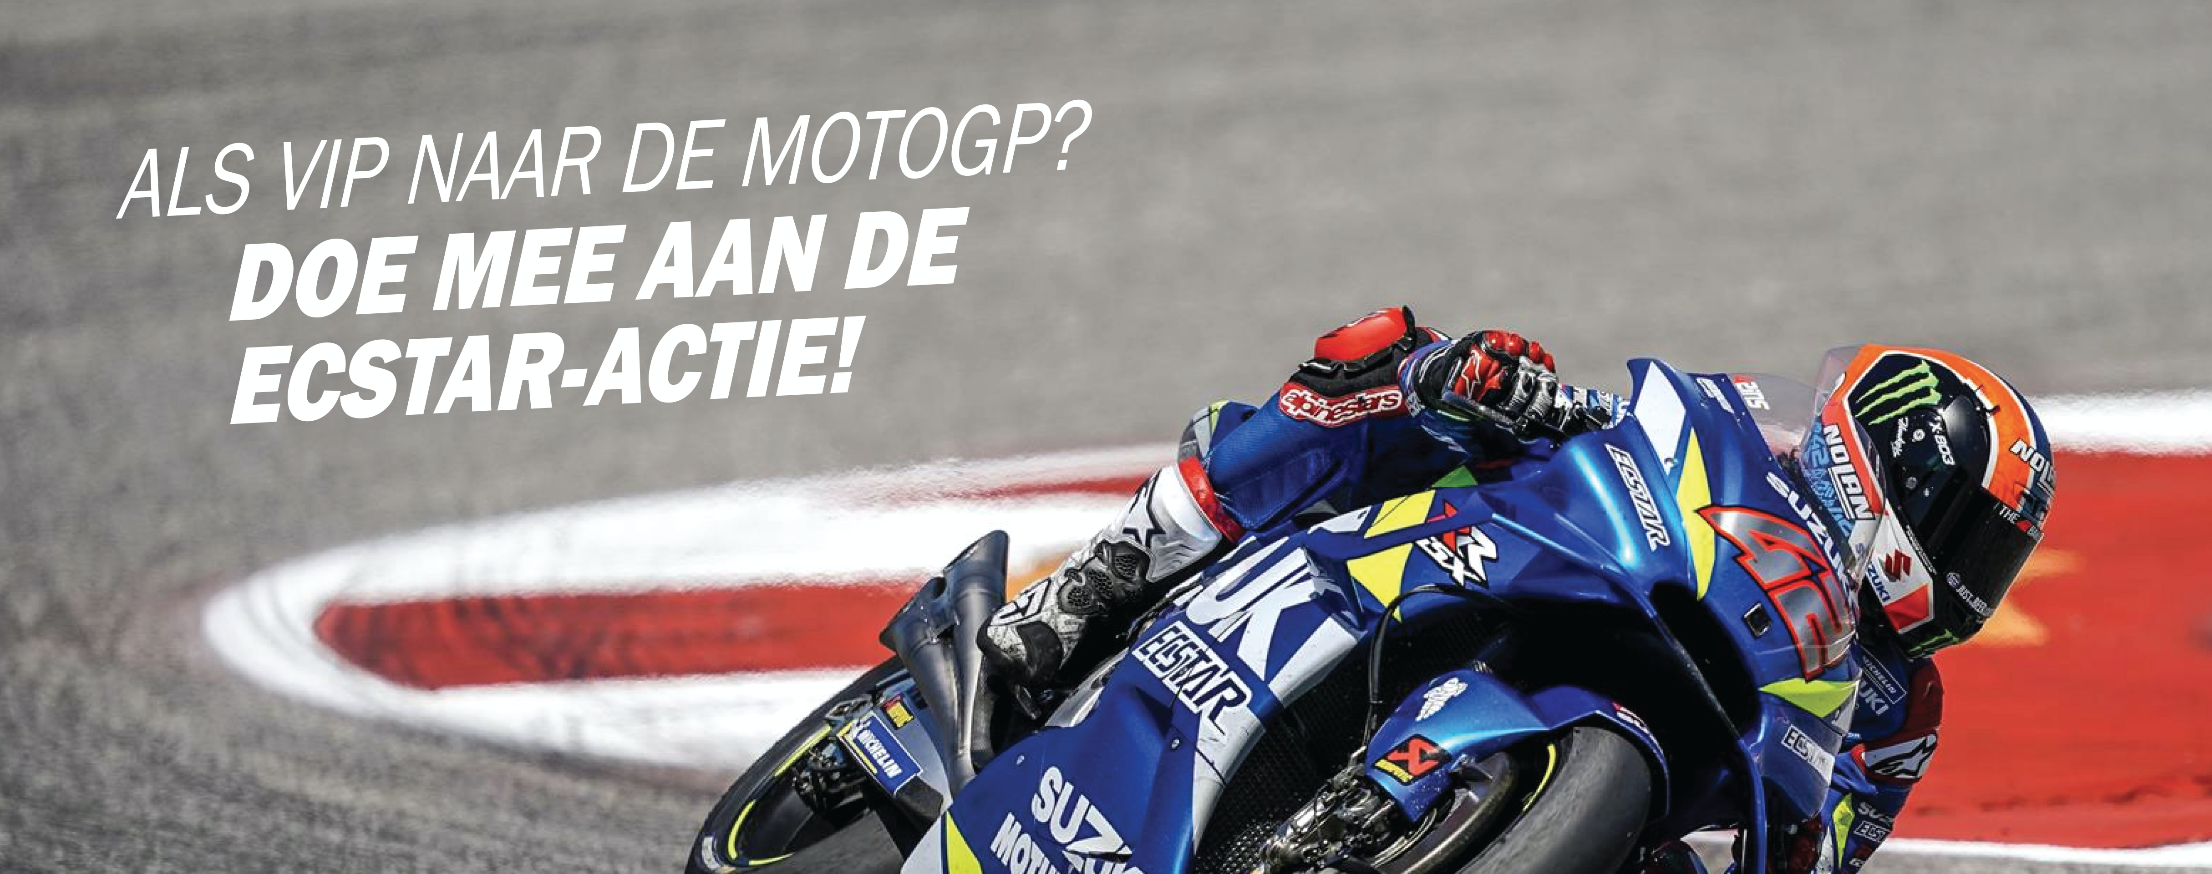 Doe mee aan de Ecstar-actie en maak kans op een VIP Arrangement voor de MotoGP!